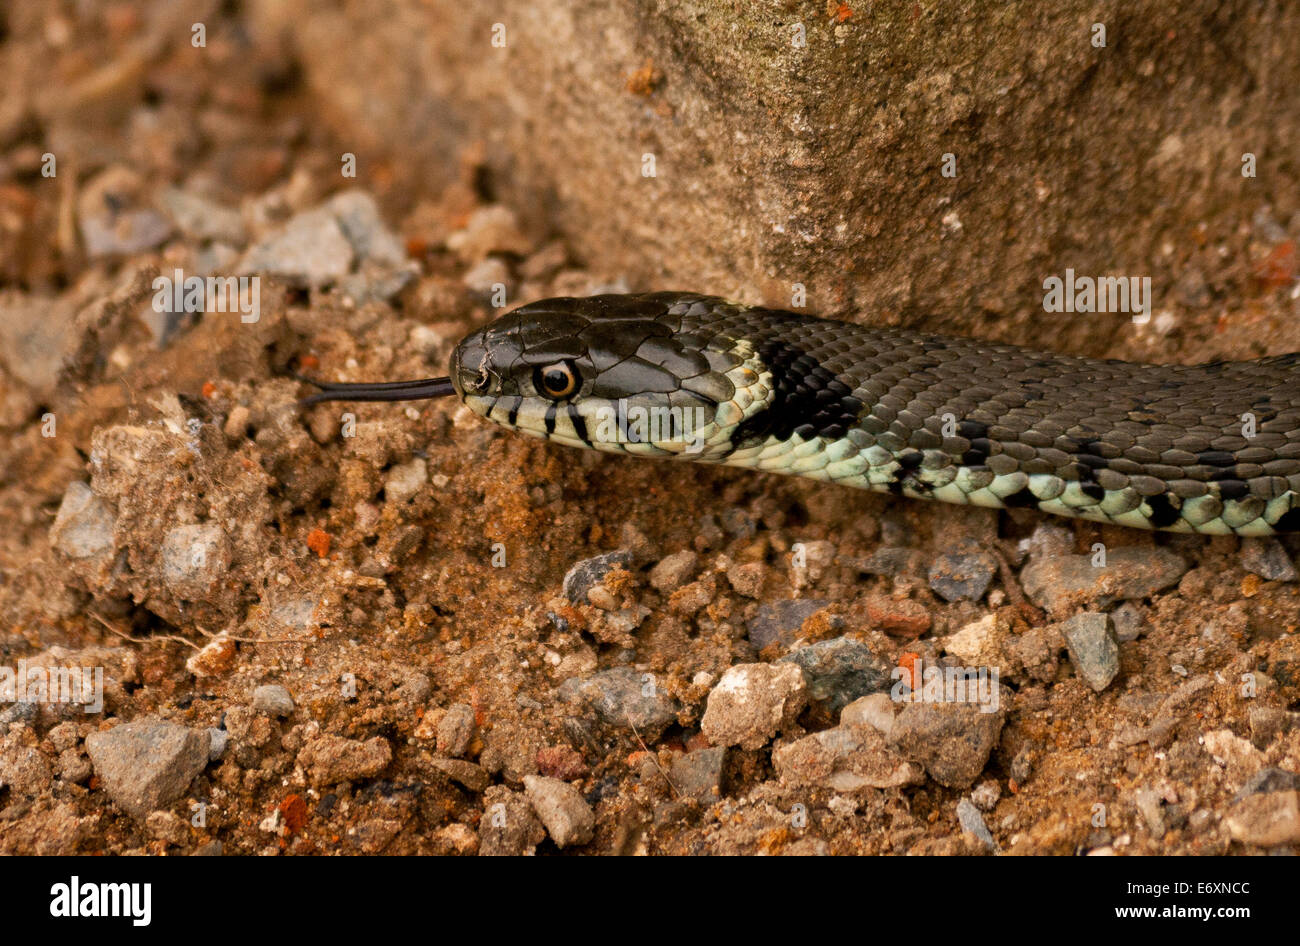 Eine britische Ringelnatter, Nahaufnahme von seinem Kopf und Zunge heraus auf sandigen Schotterboden, ist eine eurasische nicht giftige Schlange. Stockfoto